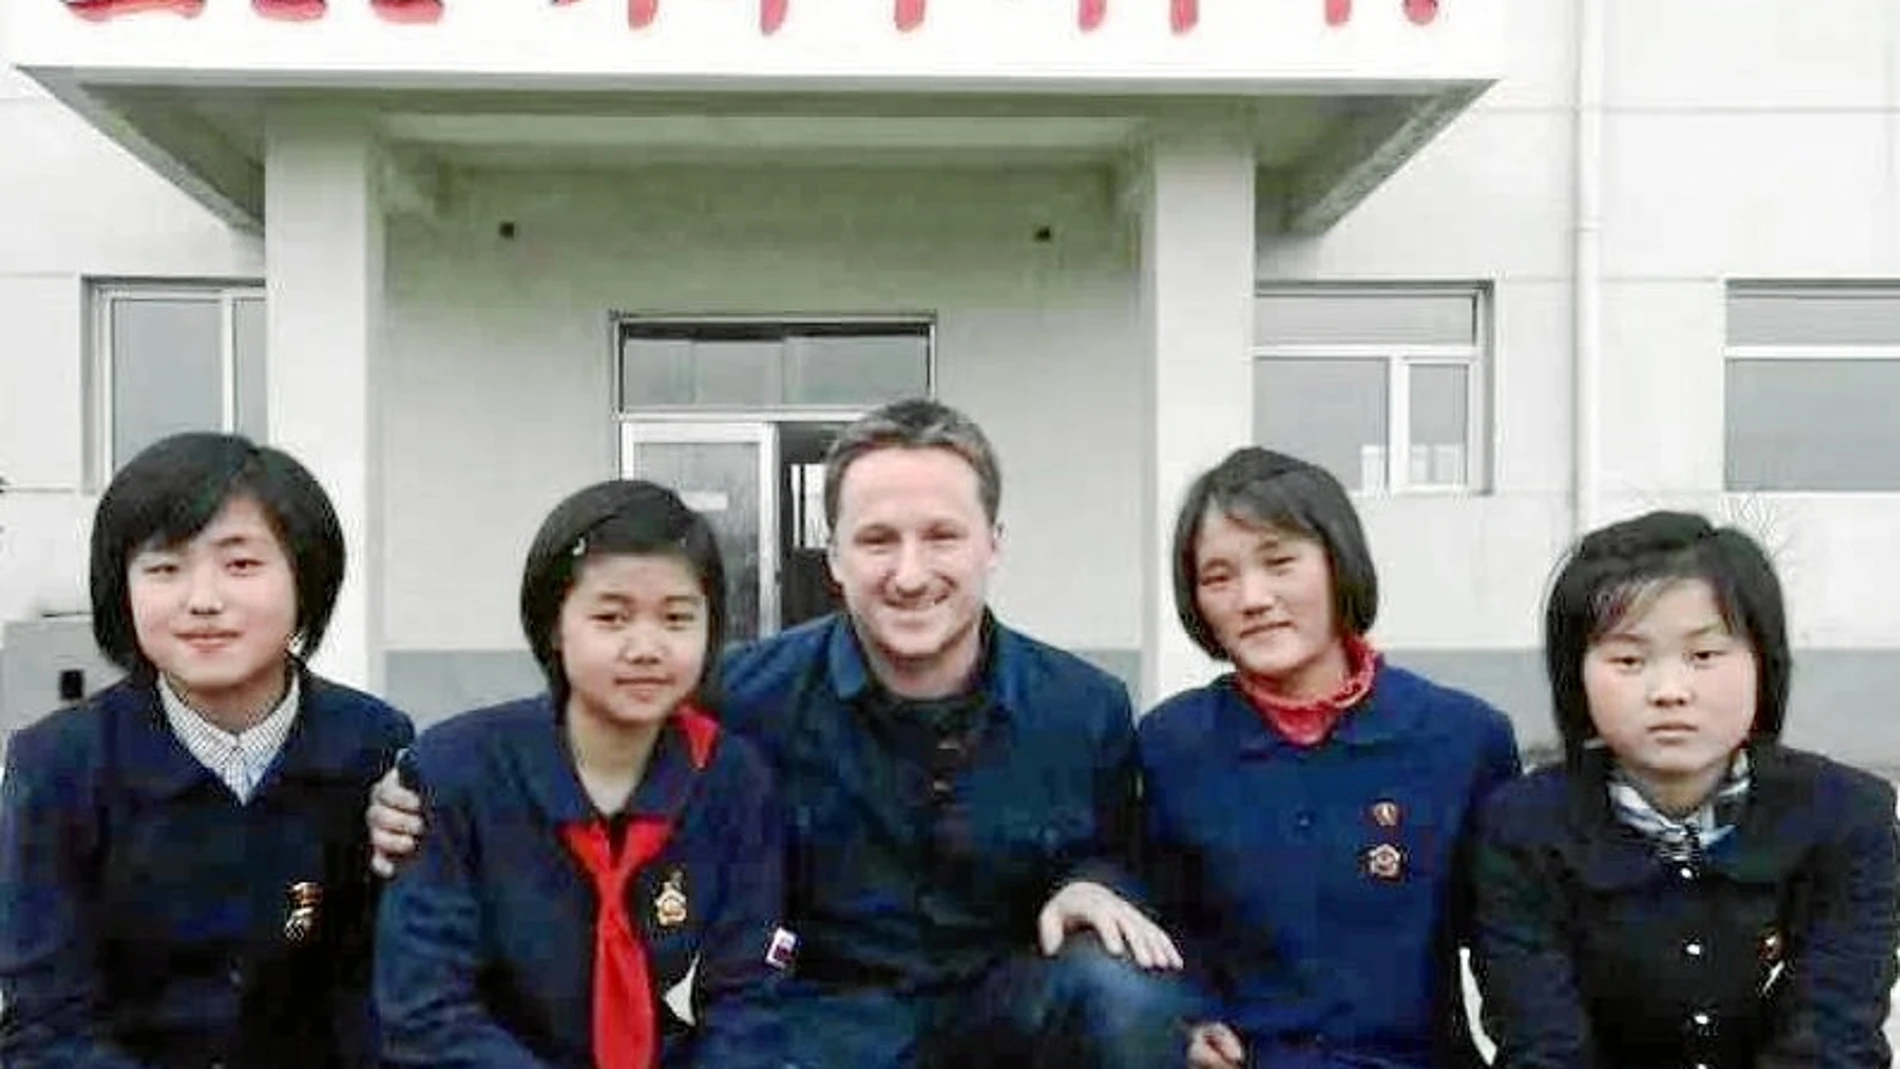 El empresario canadiense detenido ayer, Michael Spavor, posa junto a alumnas en la Zona Económica Especial de Corea del Norte